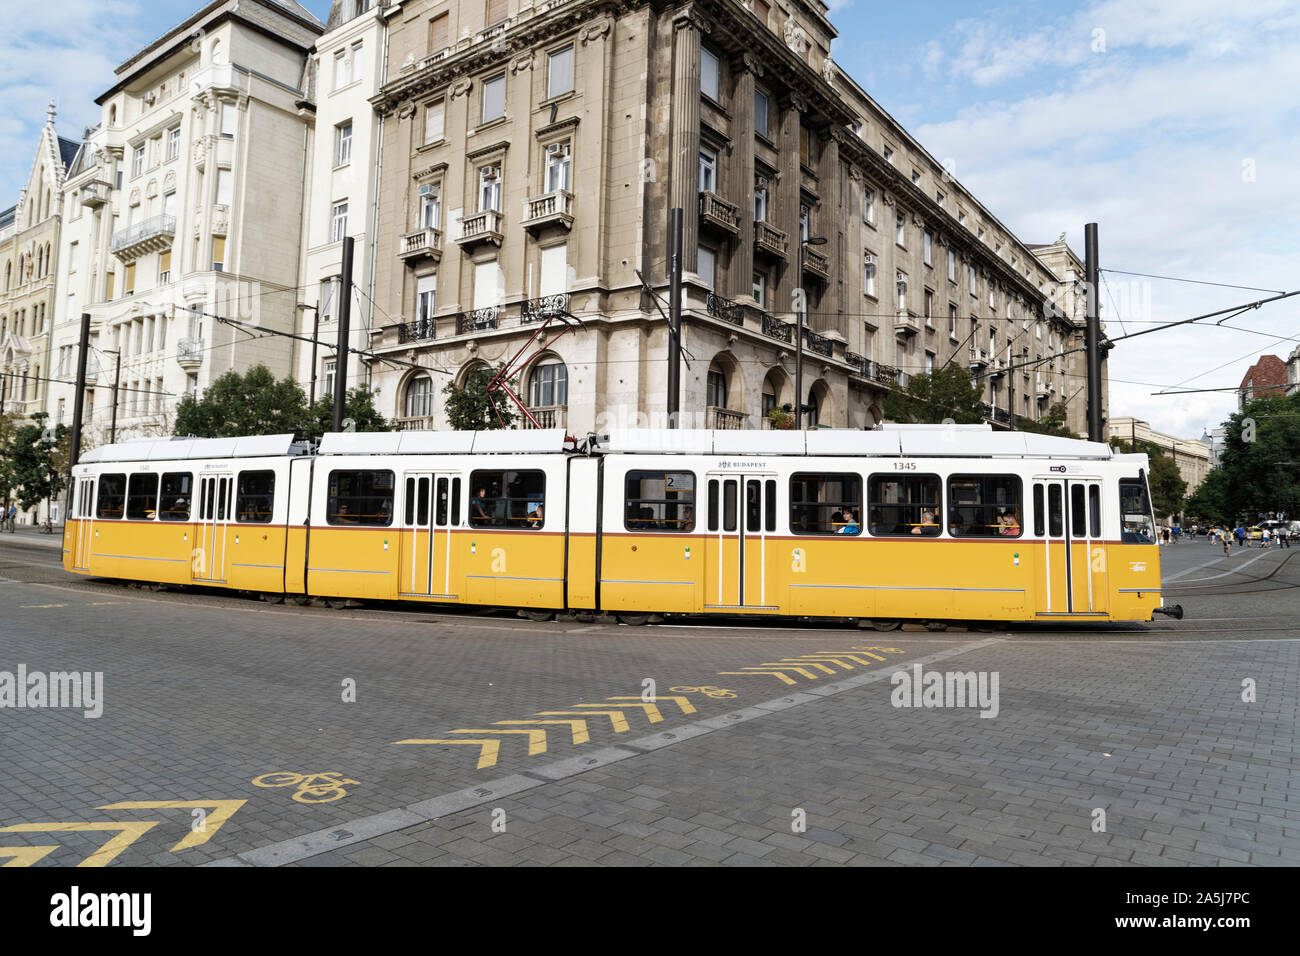 Budapest, Ungarn. 16 August, 2019. Eine Straßenbahn in Budapest, Ungarn. Quelle: Bernard Menigault/Alamy Stock Foto Stockfoto